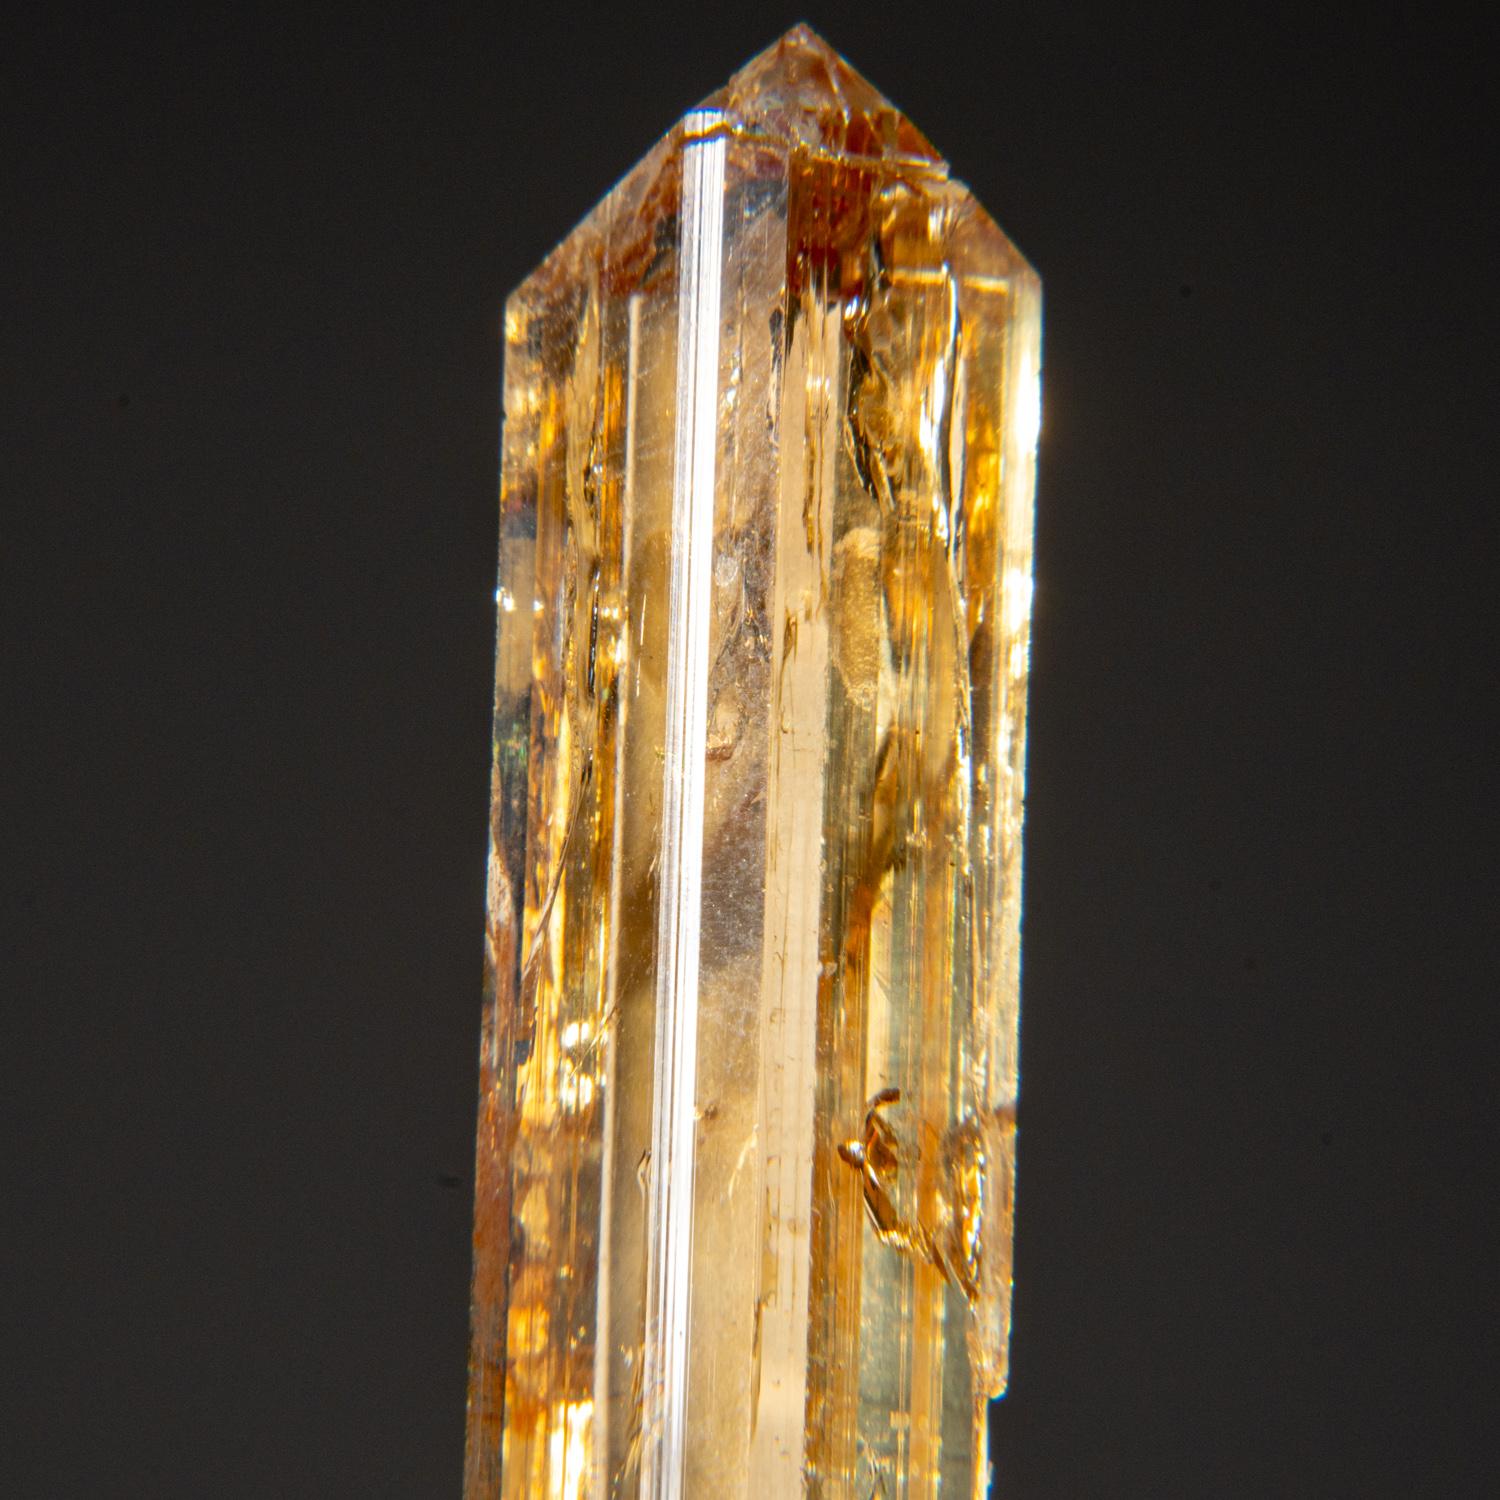 Aus Kunar, Afghanistan

Großer Einkristall aus transparentem, sherryfarbenem Topas mit scharfen, komplexen, basalen, pinacoiden Abschlüssen. Der Kristall ist gut geformt und hat glasig glänzende Flächen.

 

Gewicht: 15,2 Gramm, Größe: 0,5 x 0,25 x